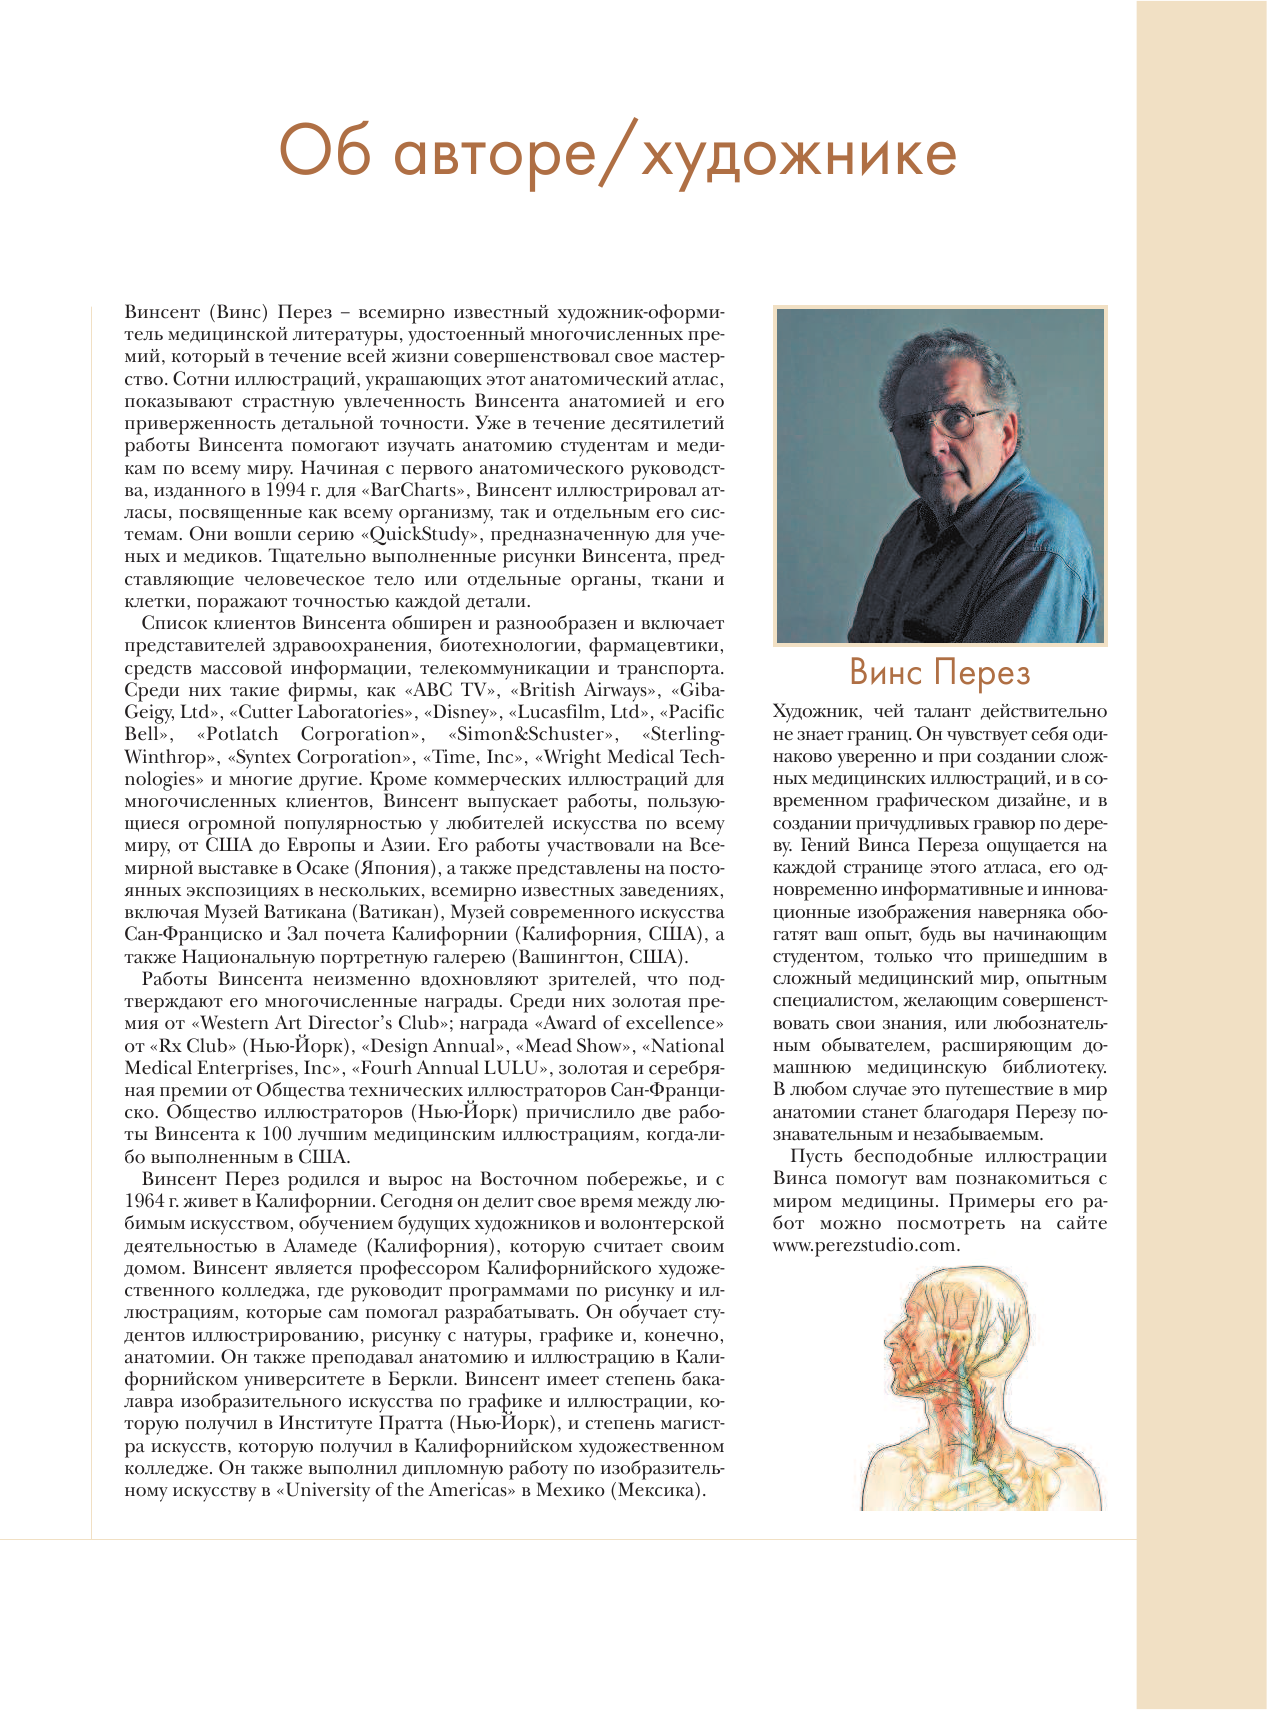 Перез Винсент Большой атлас анатомии человека - страница 3